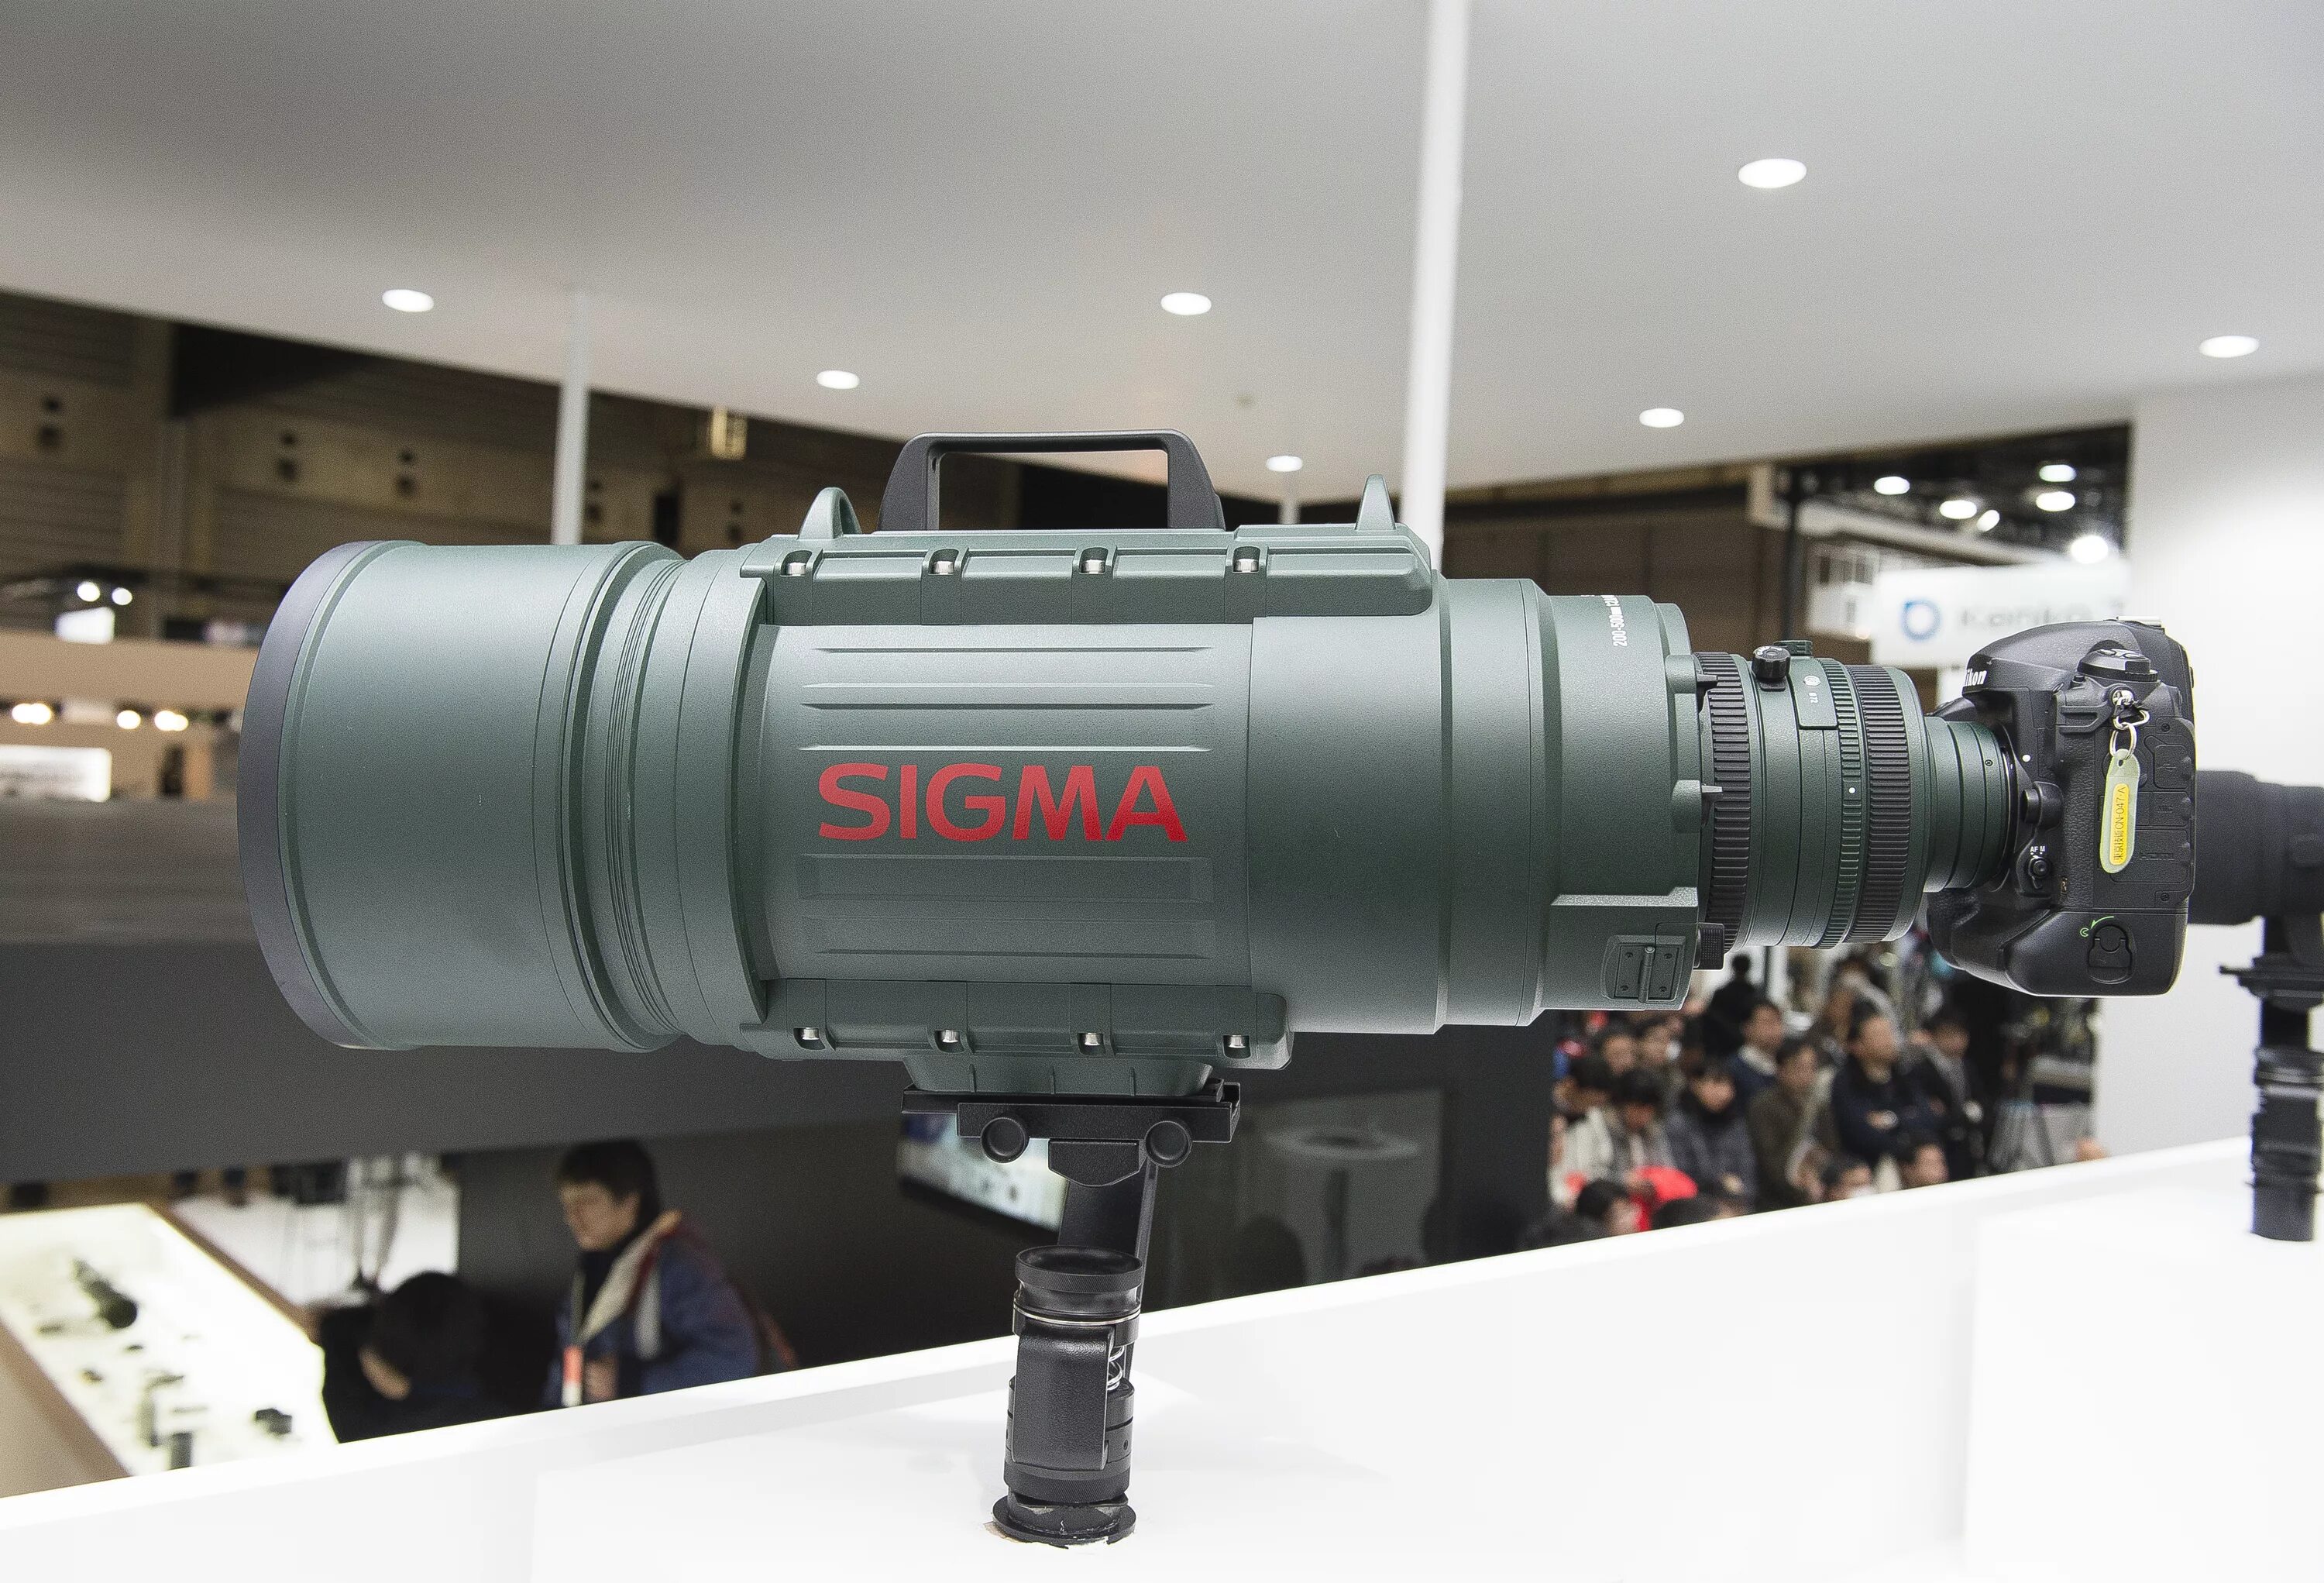 Sigma 200-500mm f/2.8 apo ex DG. Sigma 200-500 mm f2.8. Sigma 200-500 f/2.8. Sigma af 200-500mm f/2.8.